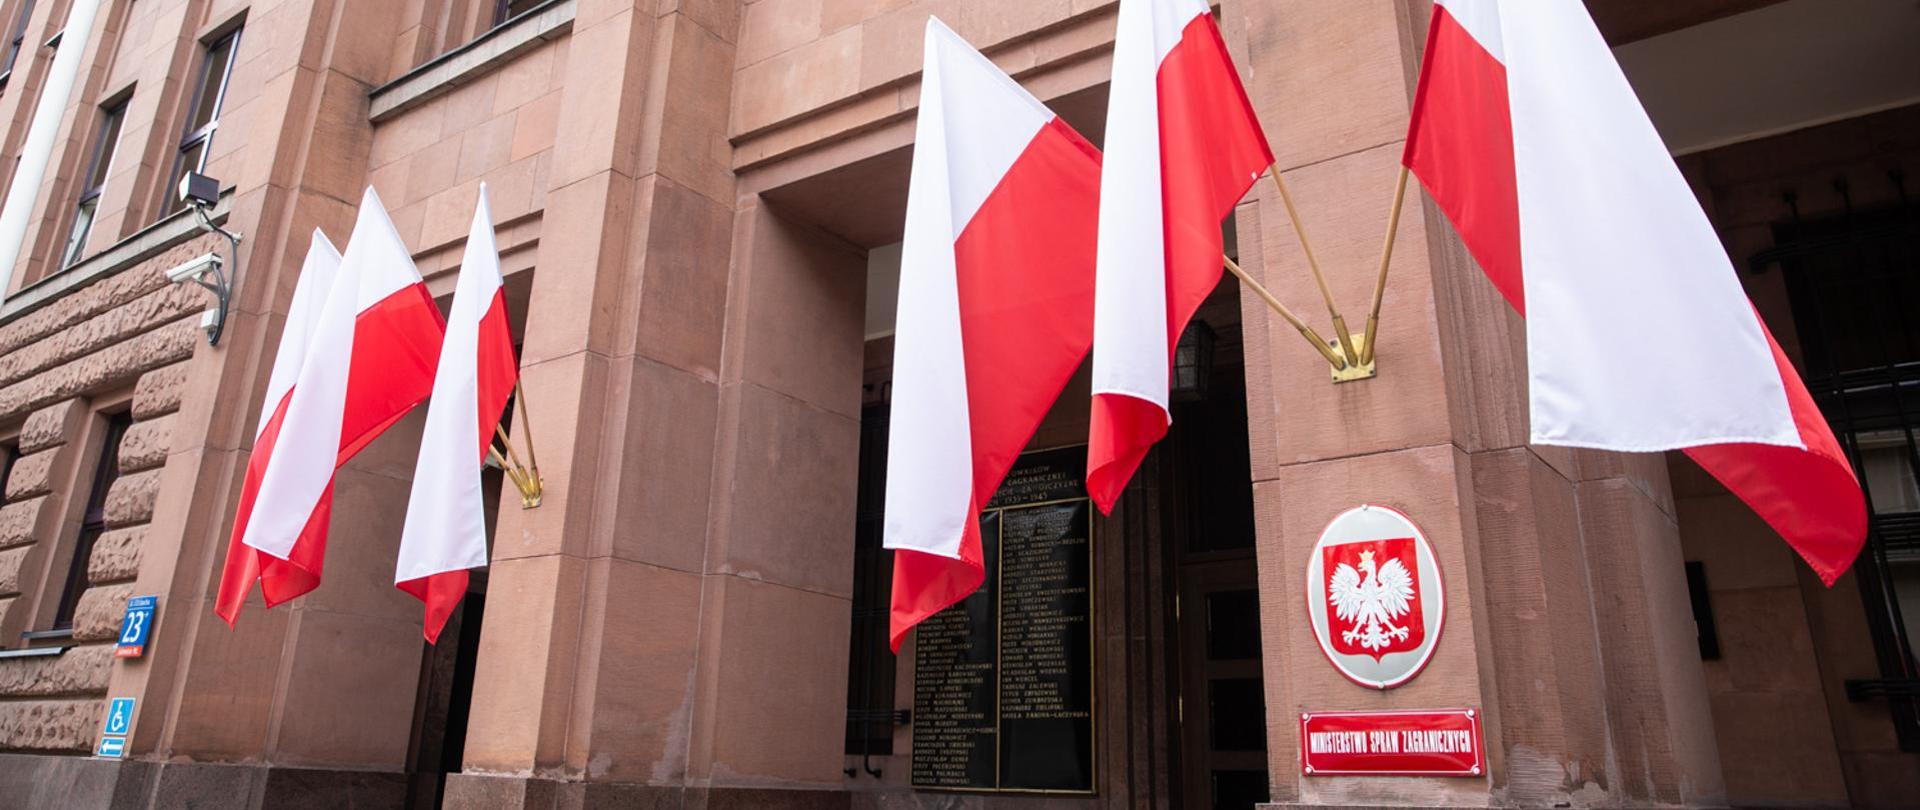 Na zdjęciu widać wejście do gmachu Ministerstwa Spraw Zagranicznych, wywieszone są biało-czerwone flagi, na kolumnie godło Polski oraz tabliczka z napisem Ministerstwo Spraw Zagranicznych.